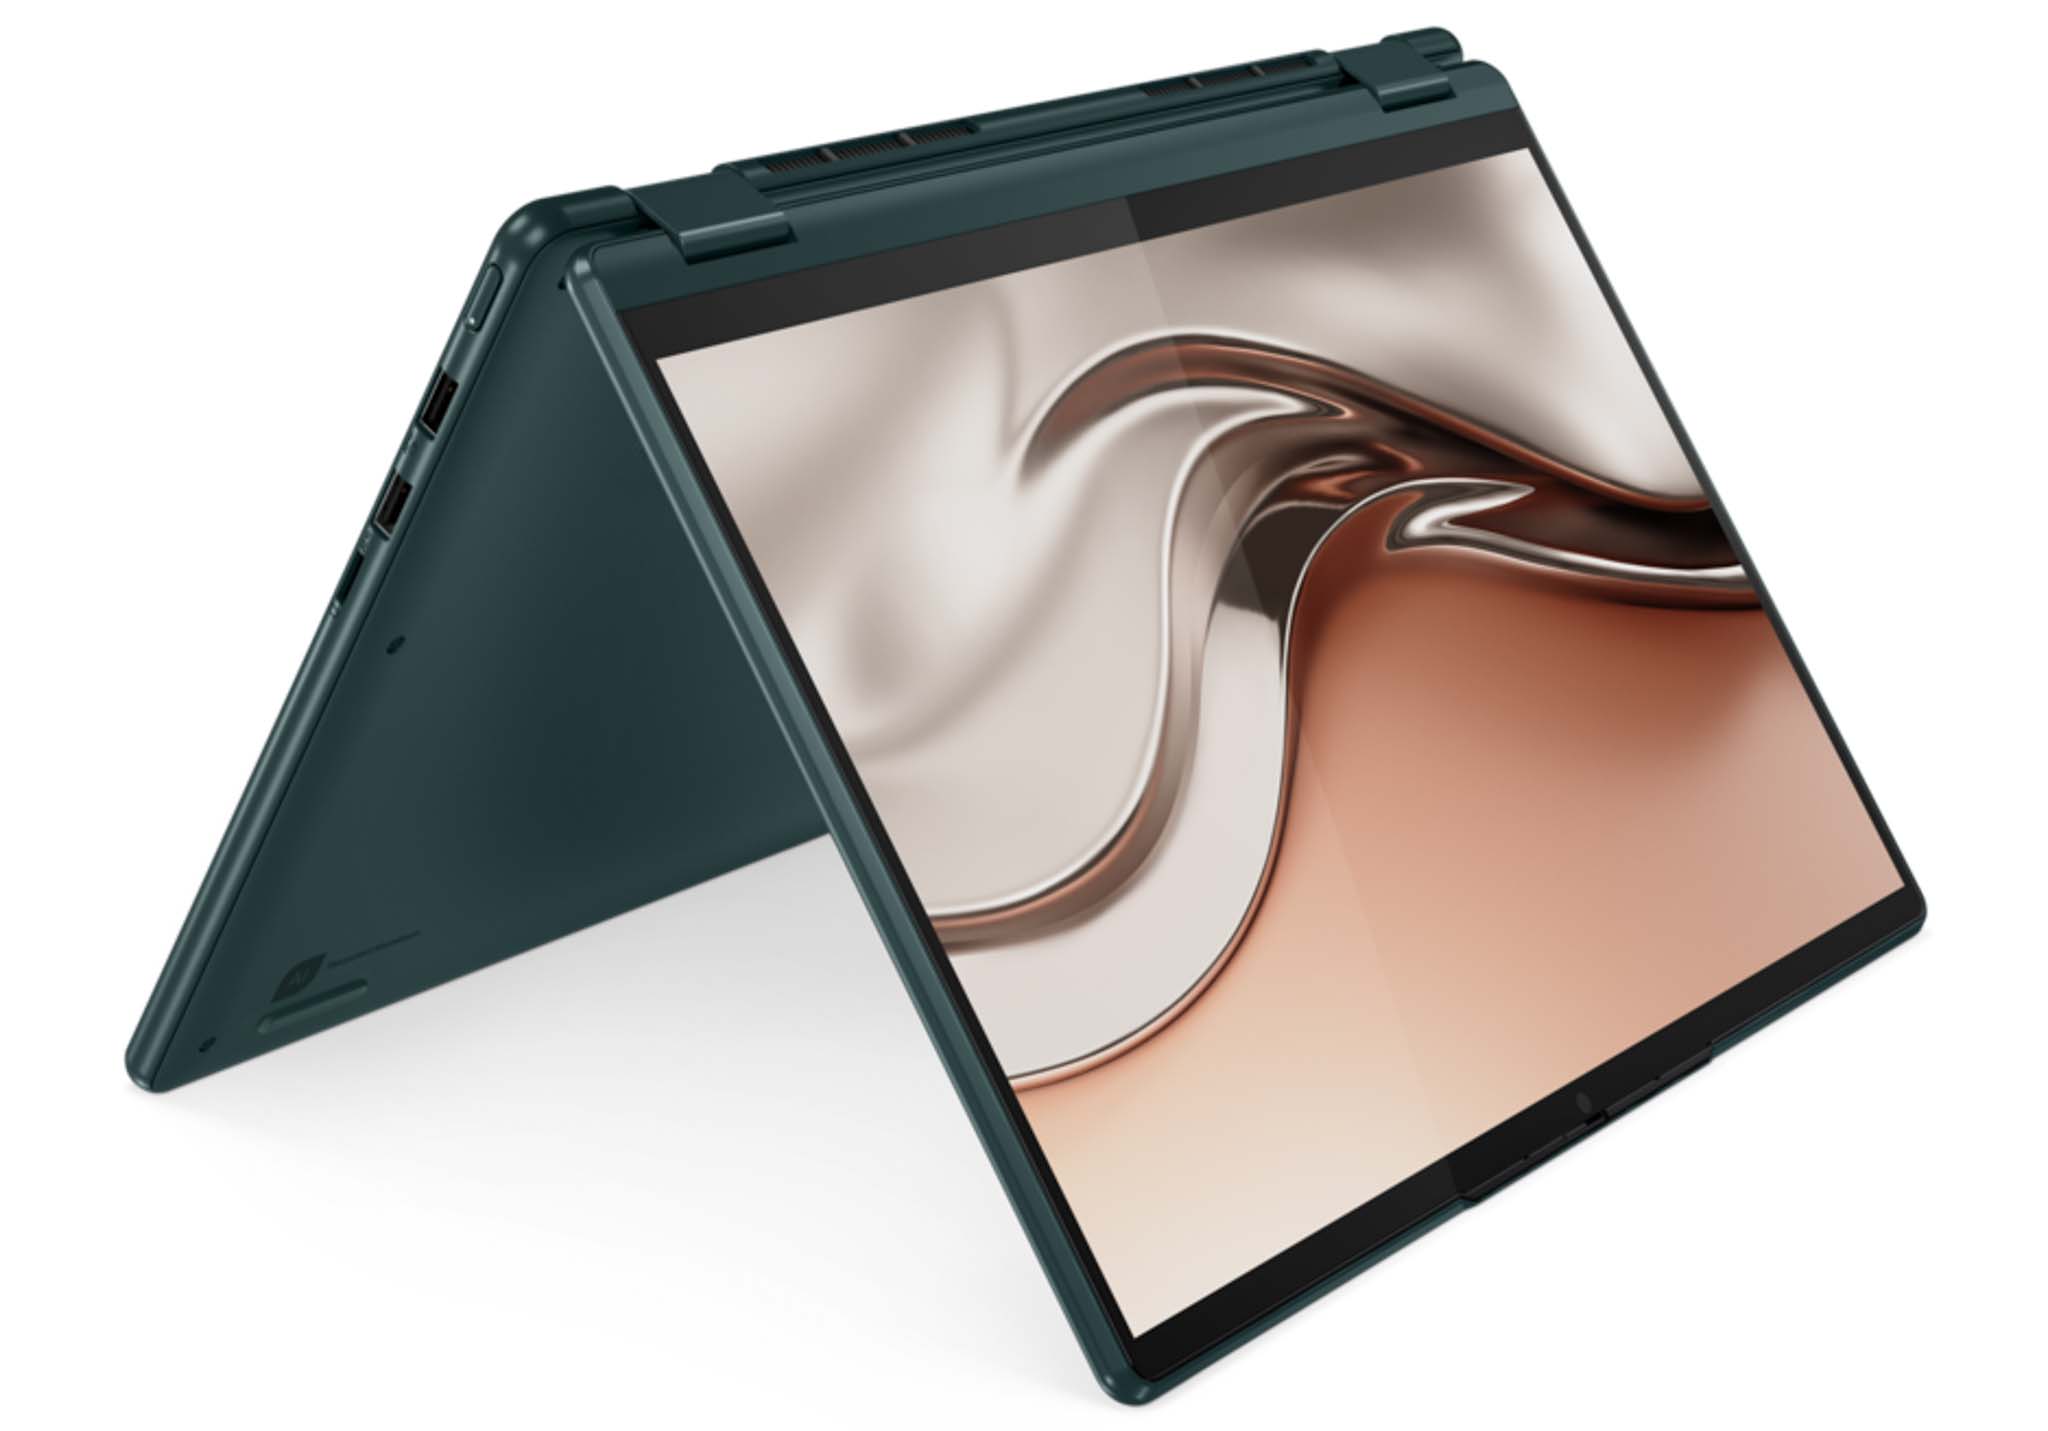 Lenovo ra mắt loạt máy tính Yoga mới: Kết hợp hài hòa giữa thiết kế đỉnh cao và tính bền vững